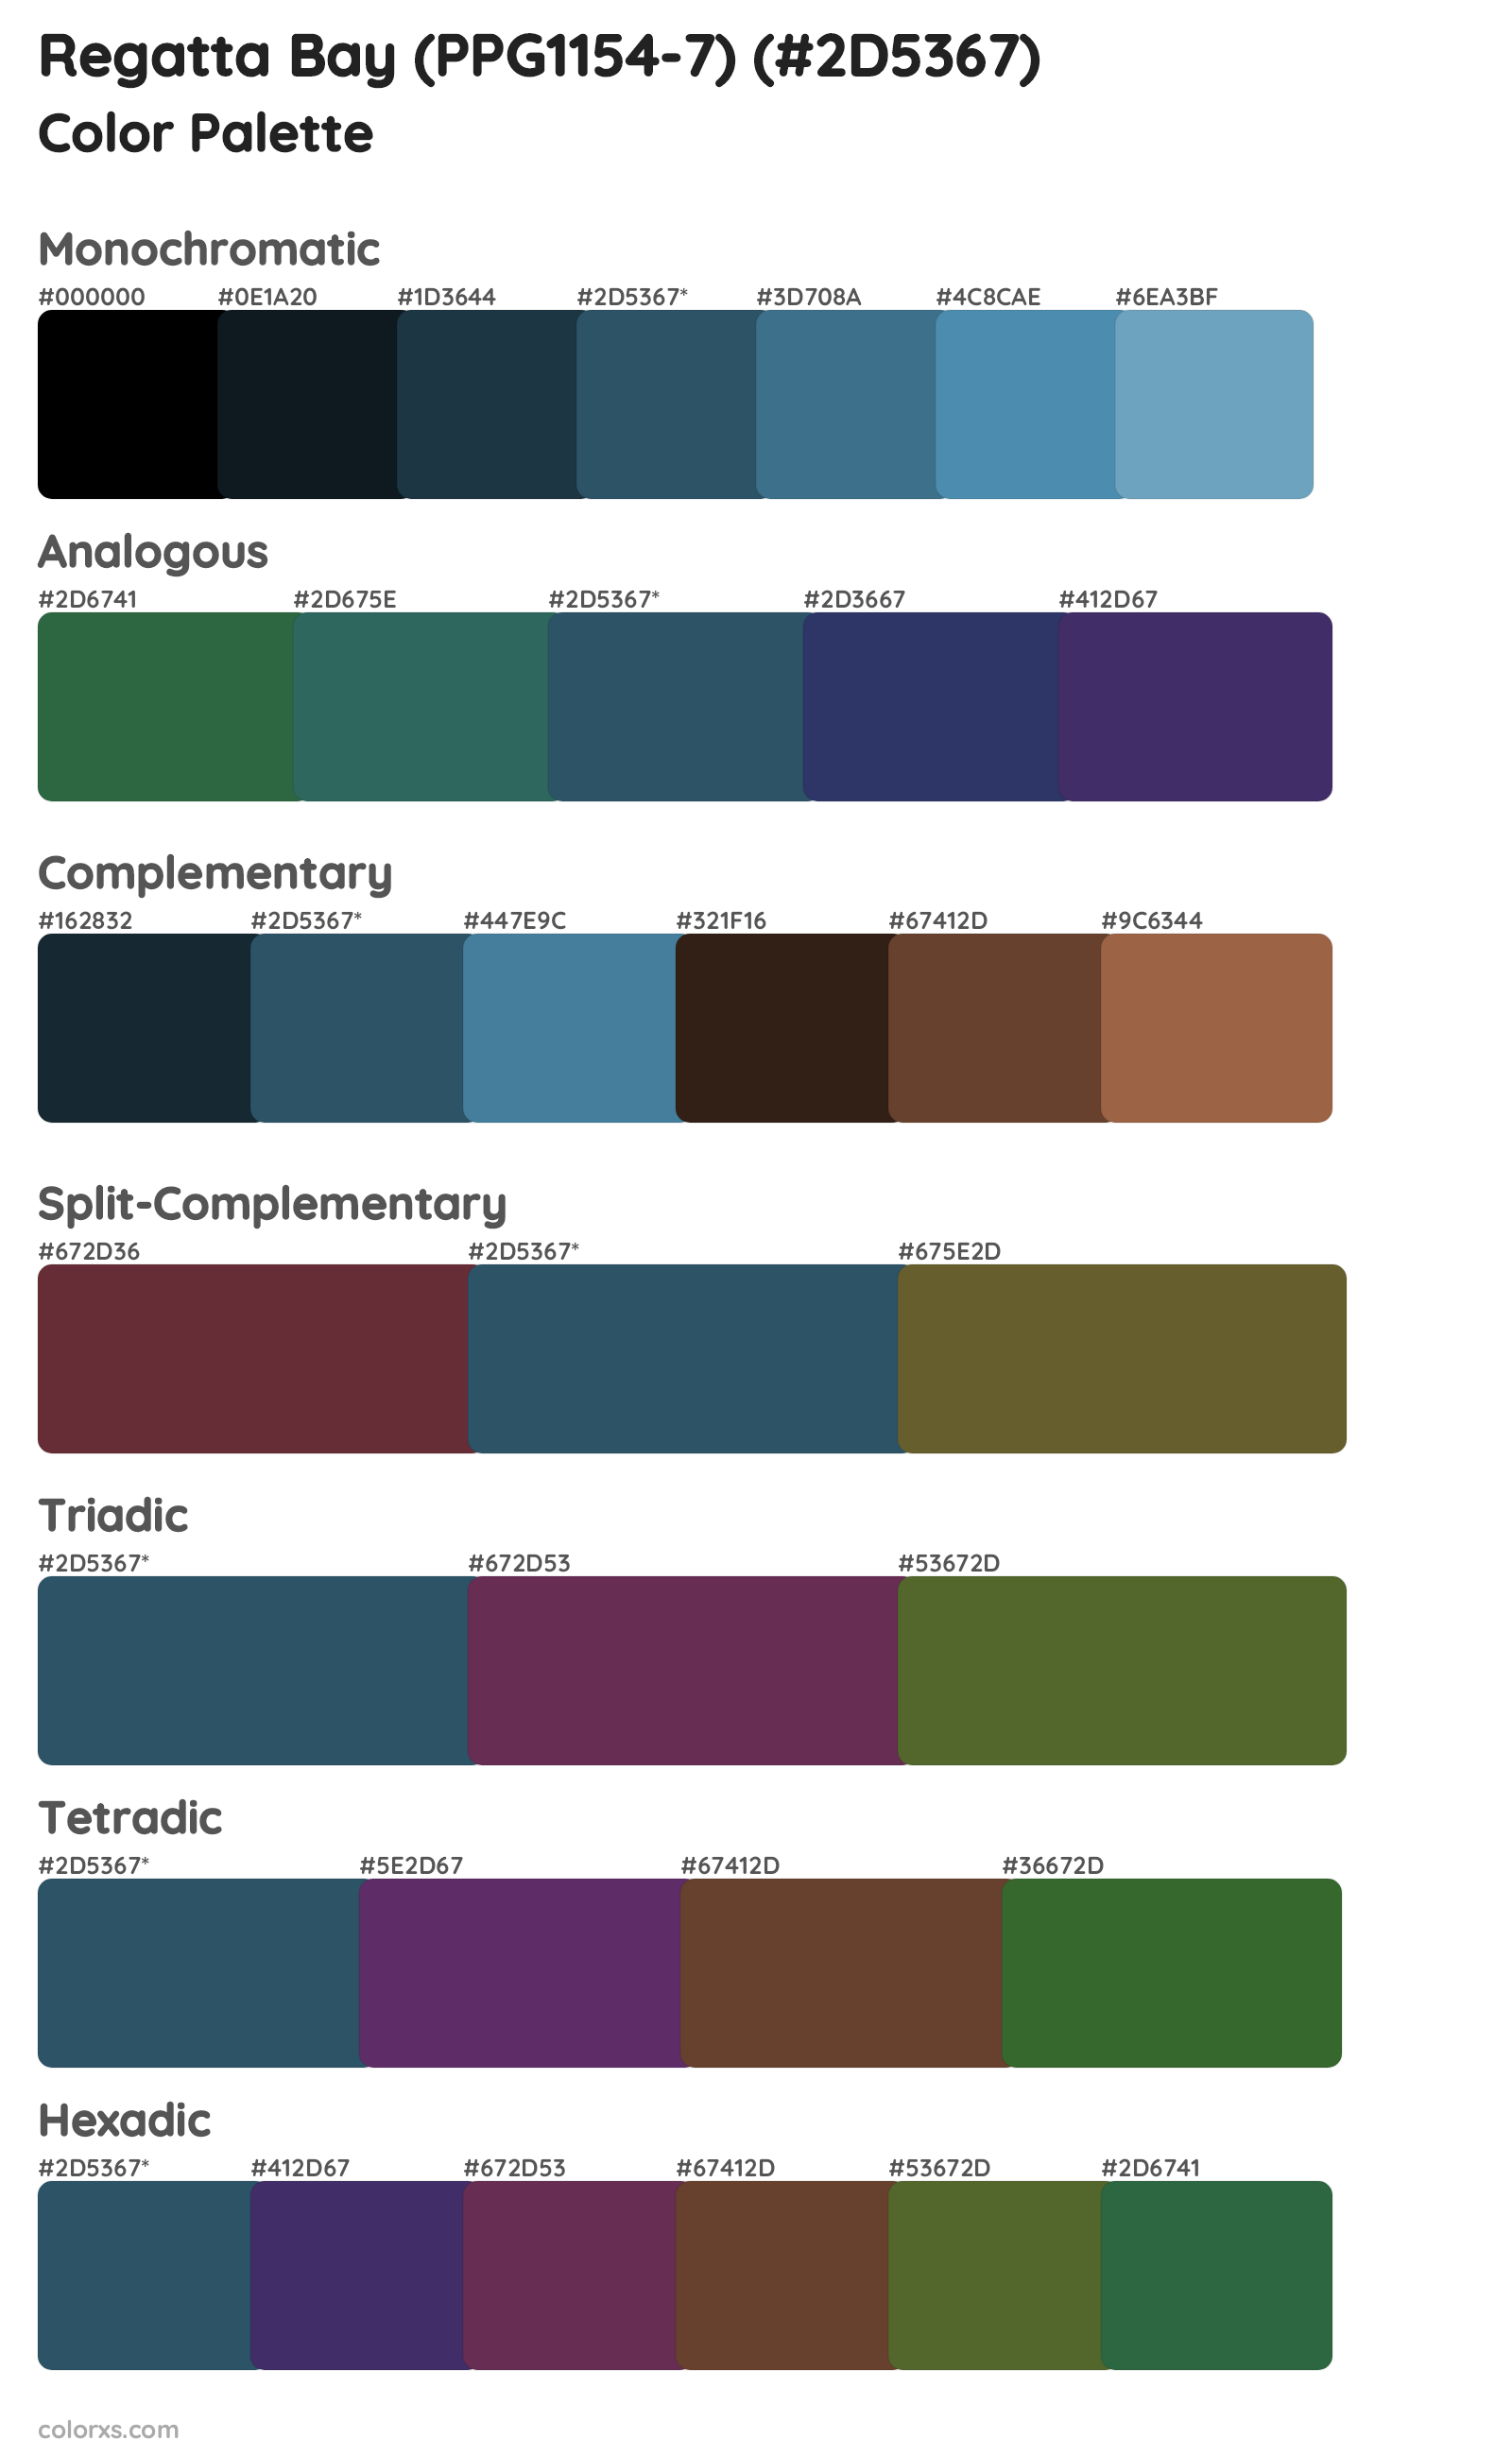 Regatta Bay (PPG1154-7) Color Scheme Palettes